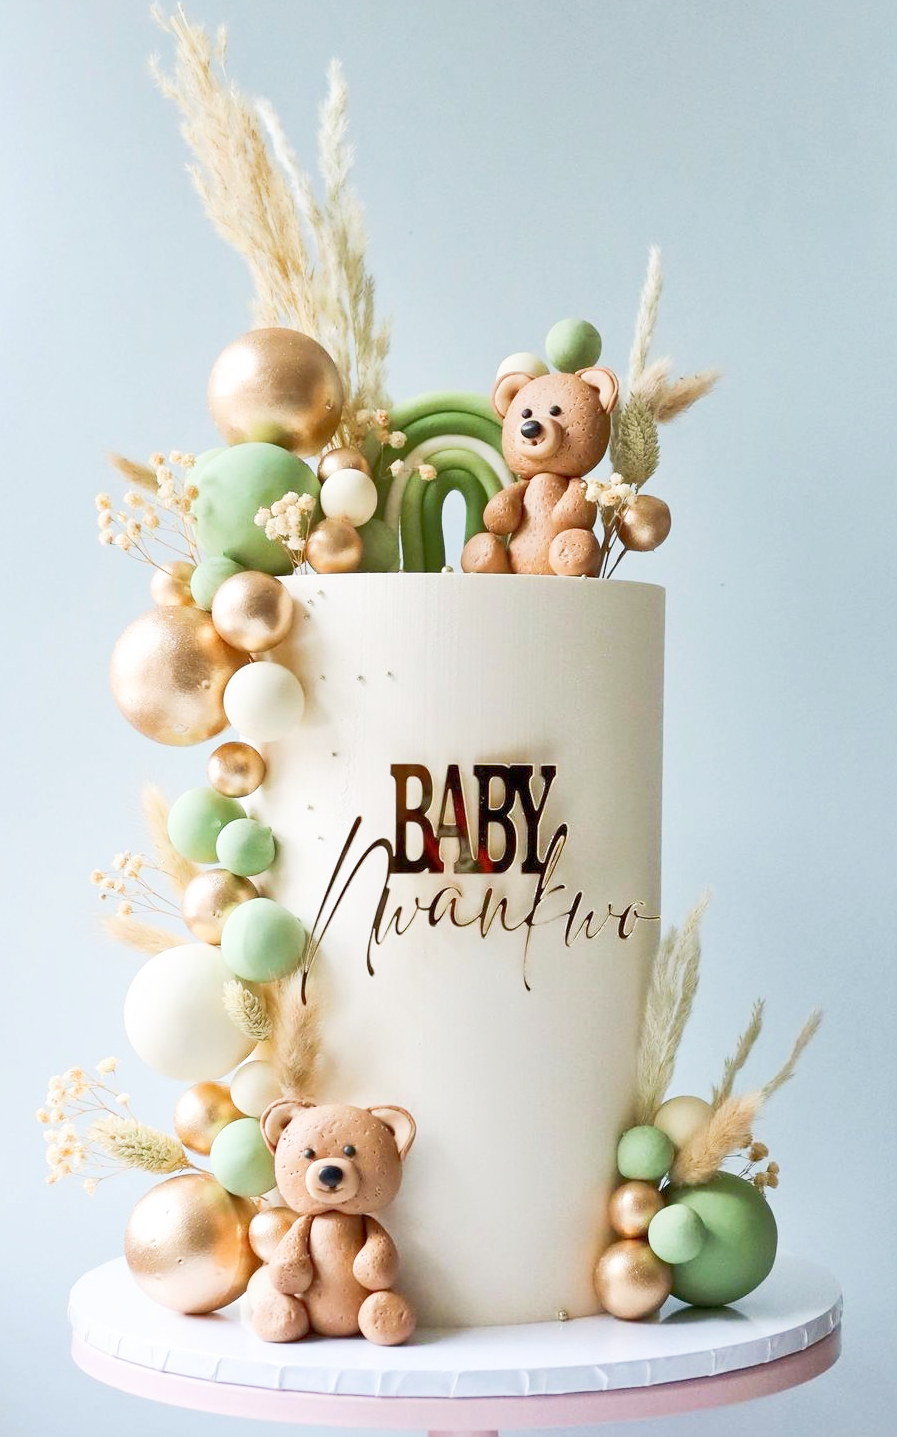 Baby Name Cake Charm - Personalised Acrylic Cake Decor